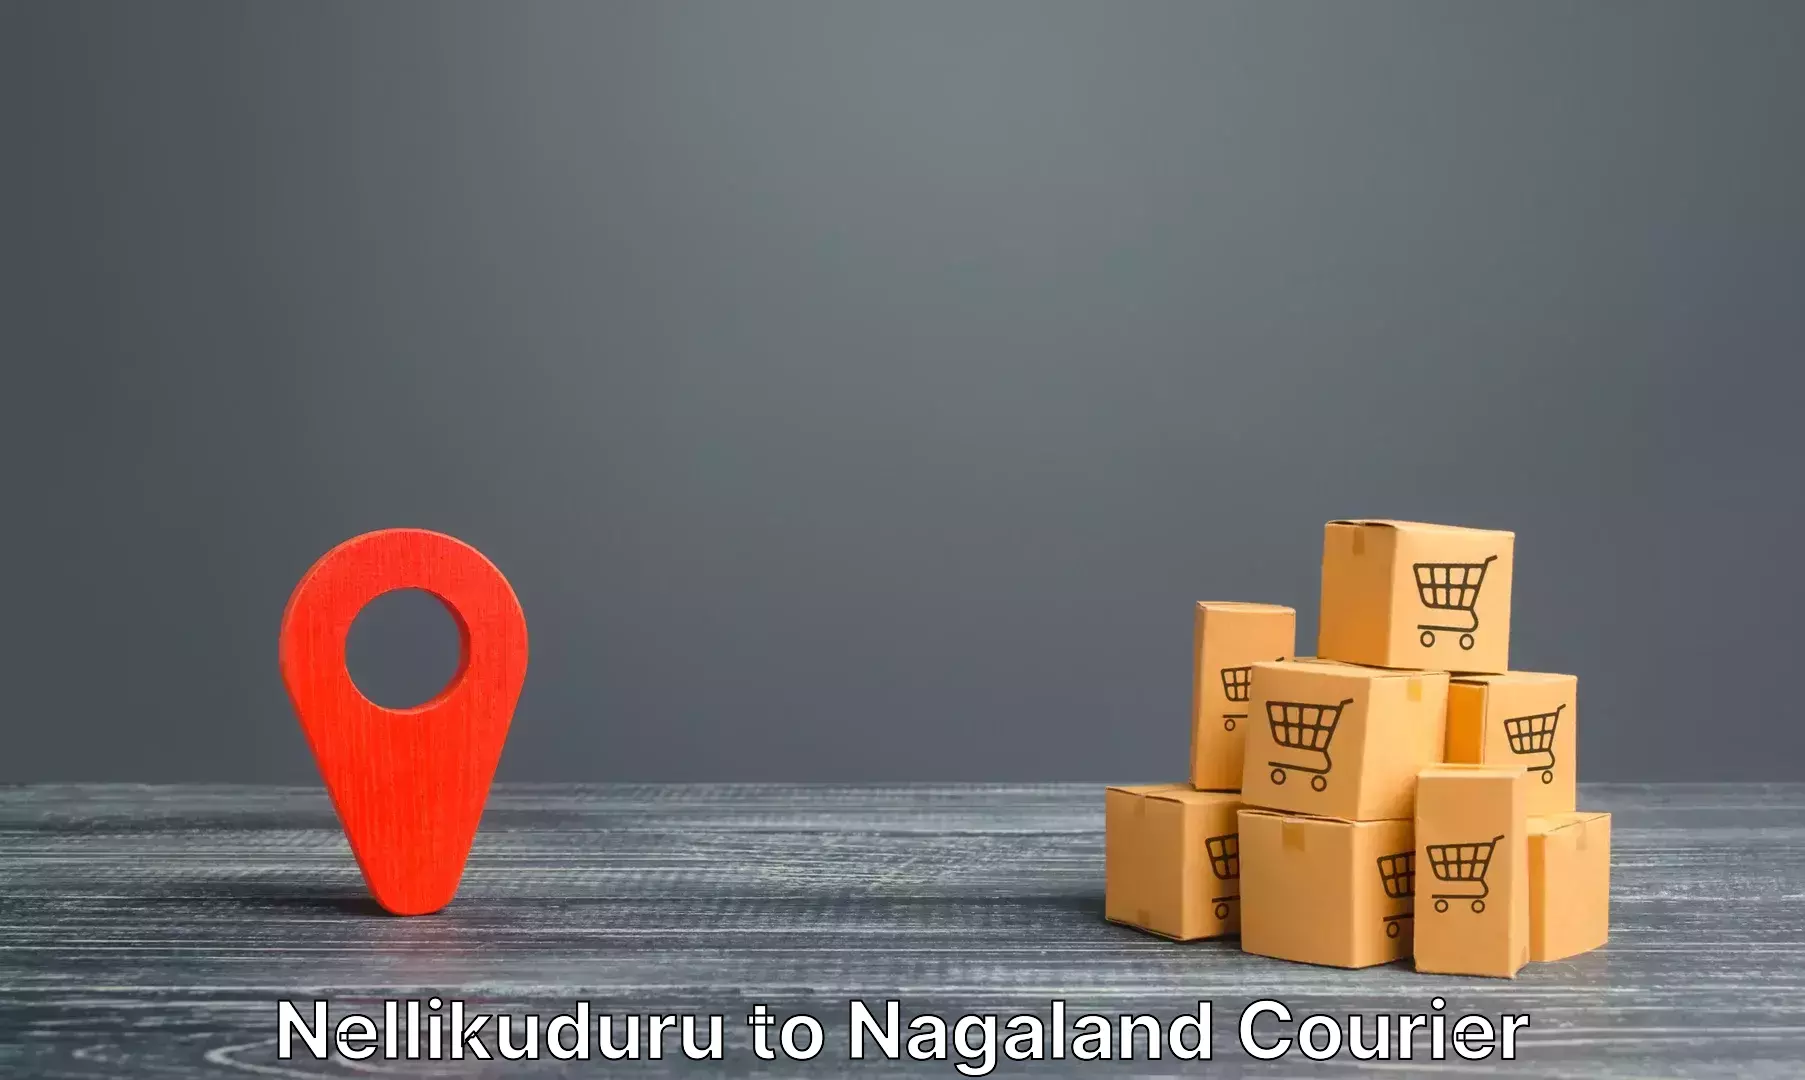 Luggage delivery optimization Nellikuduru to NIT Nagaland